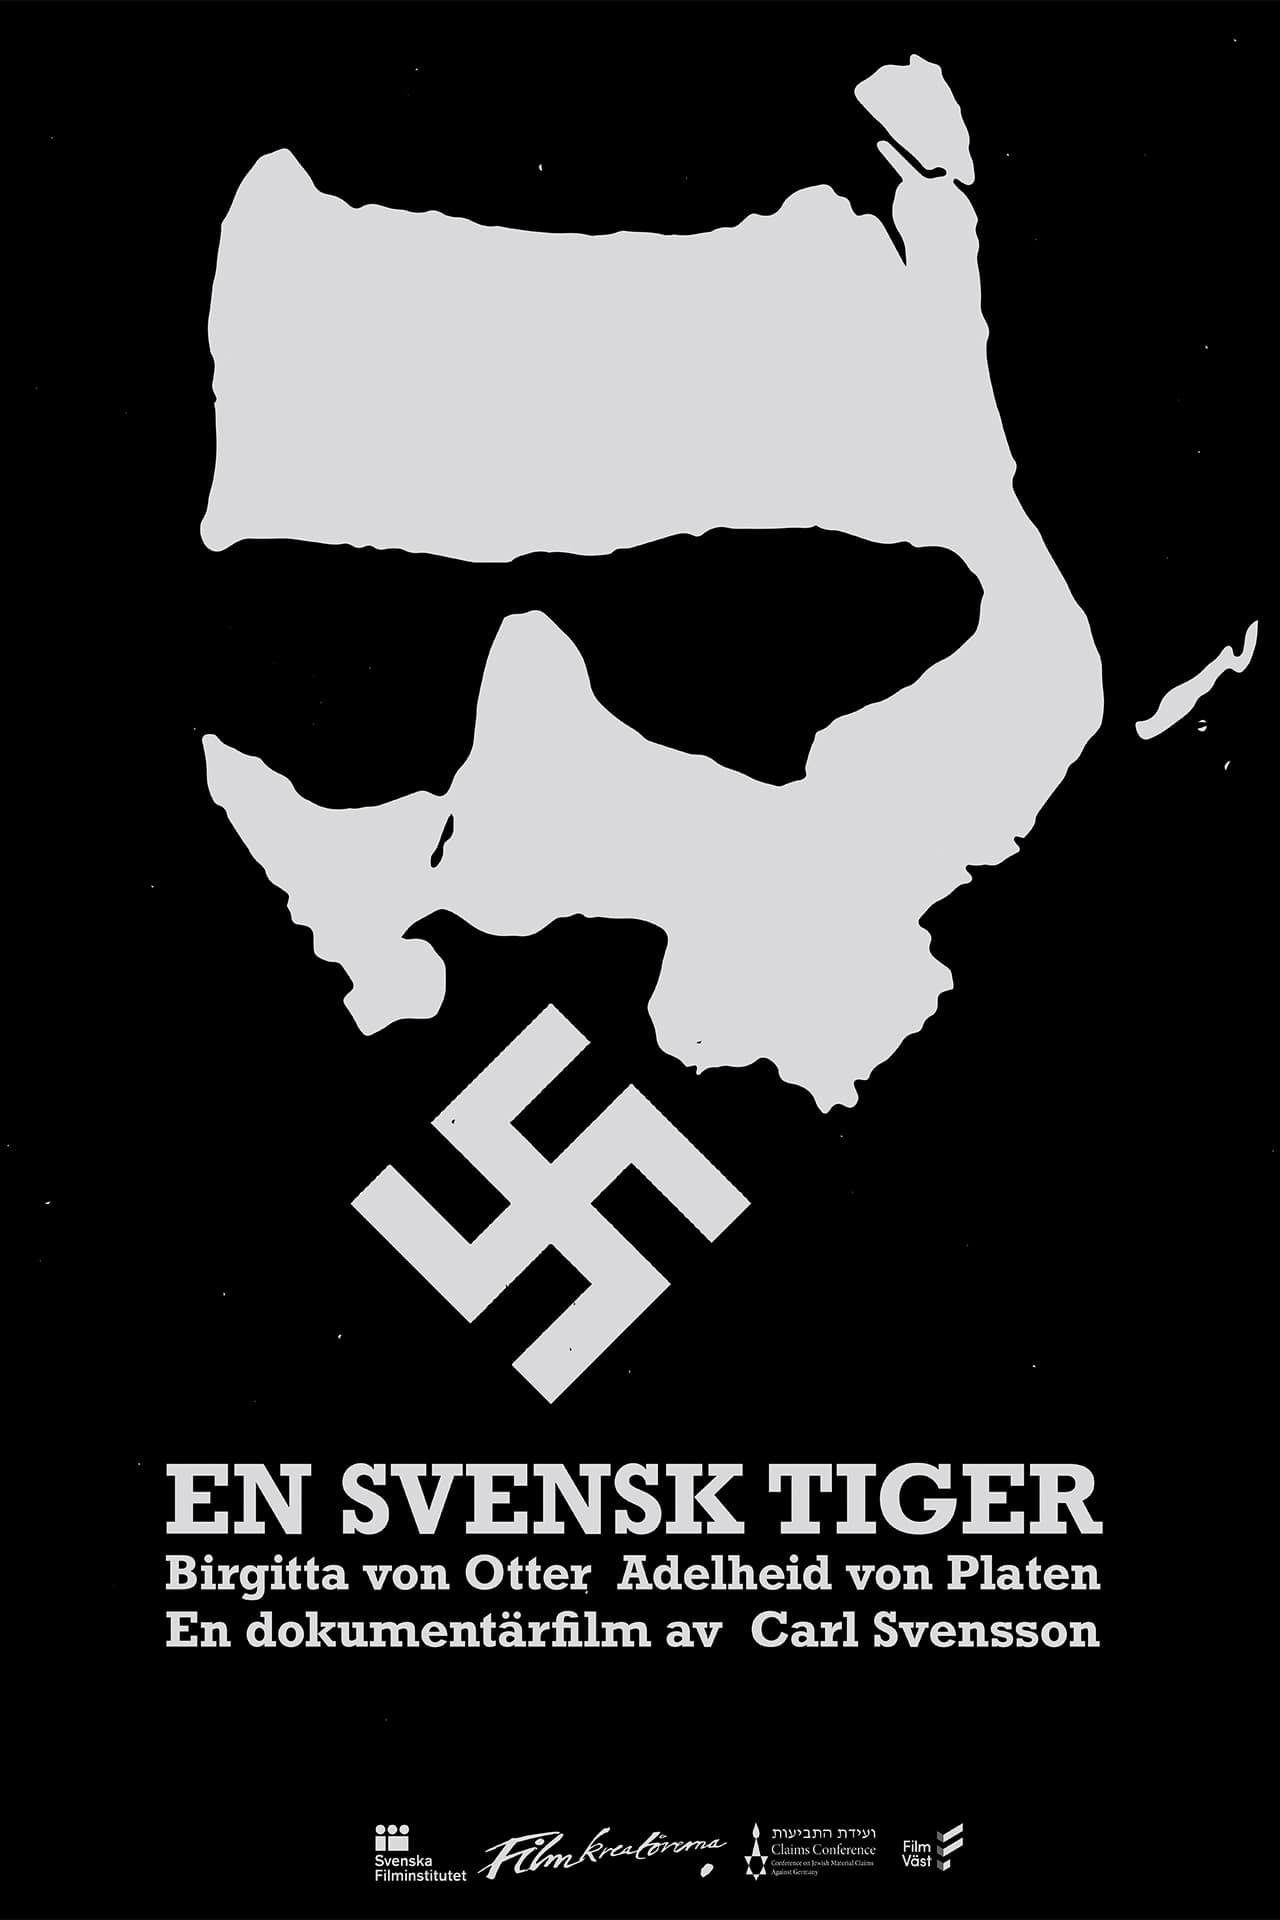 The Swedish Silence